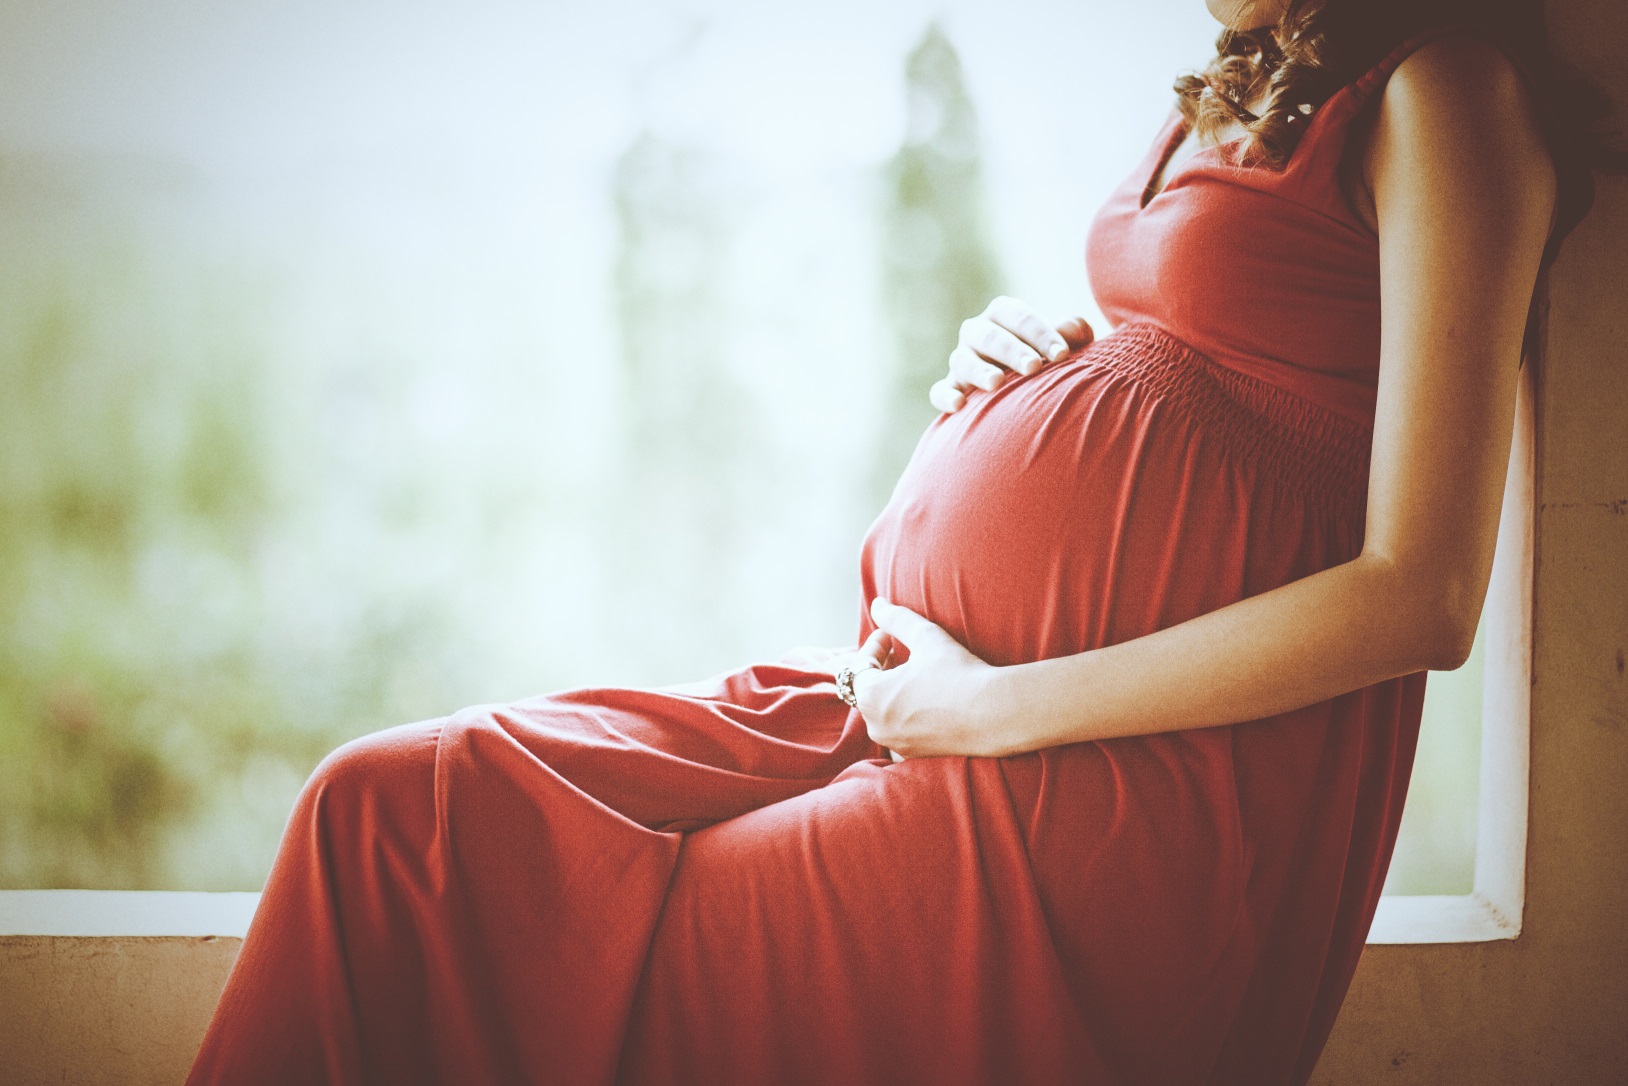  Algunos datos interesantes sobre el embarazo